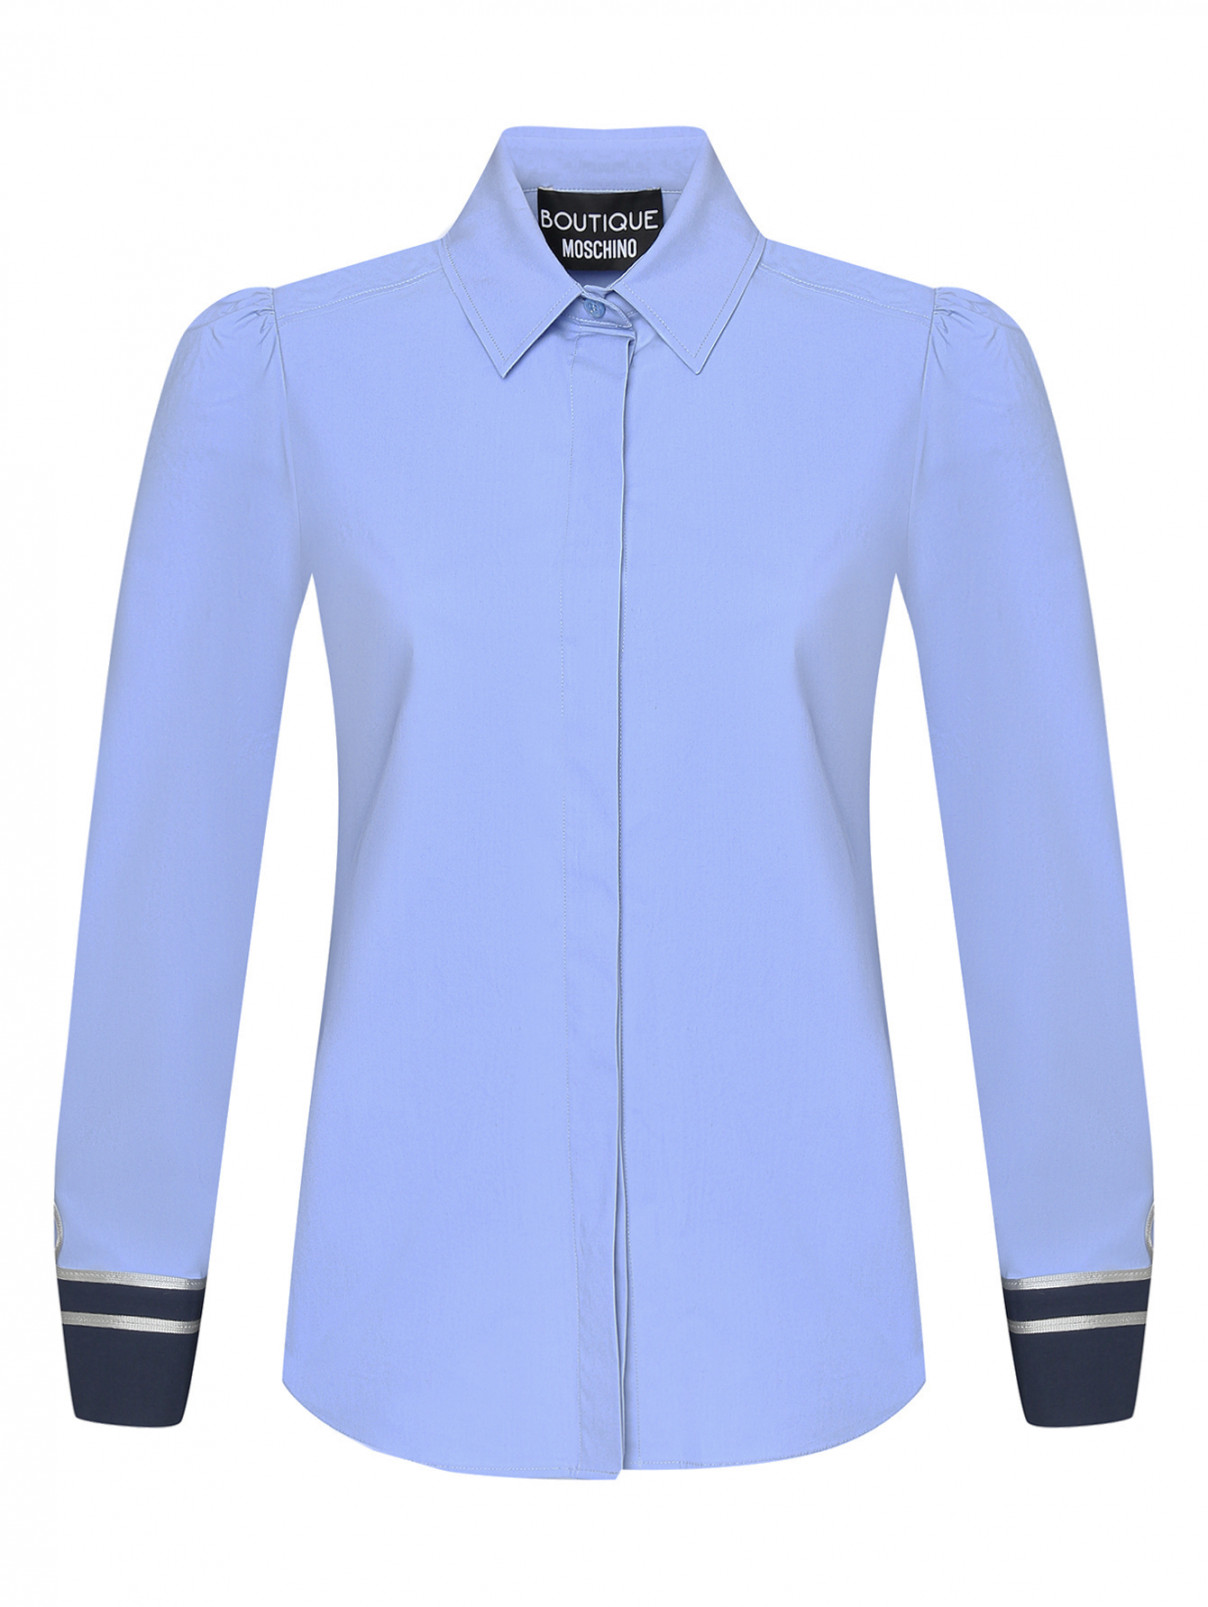 Блуза из хлопка с объемными рукавами Moschino Boutique  –  Общий вид  – Цвет:  Синий